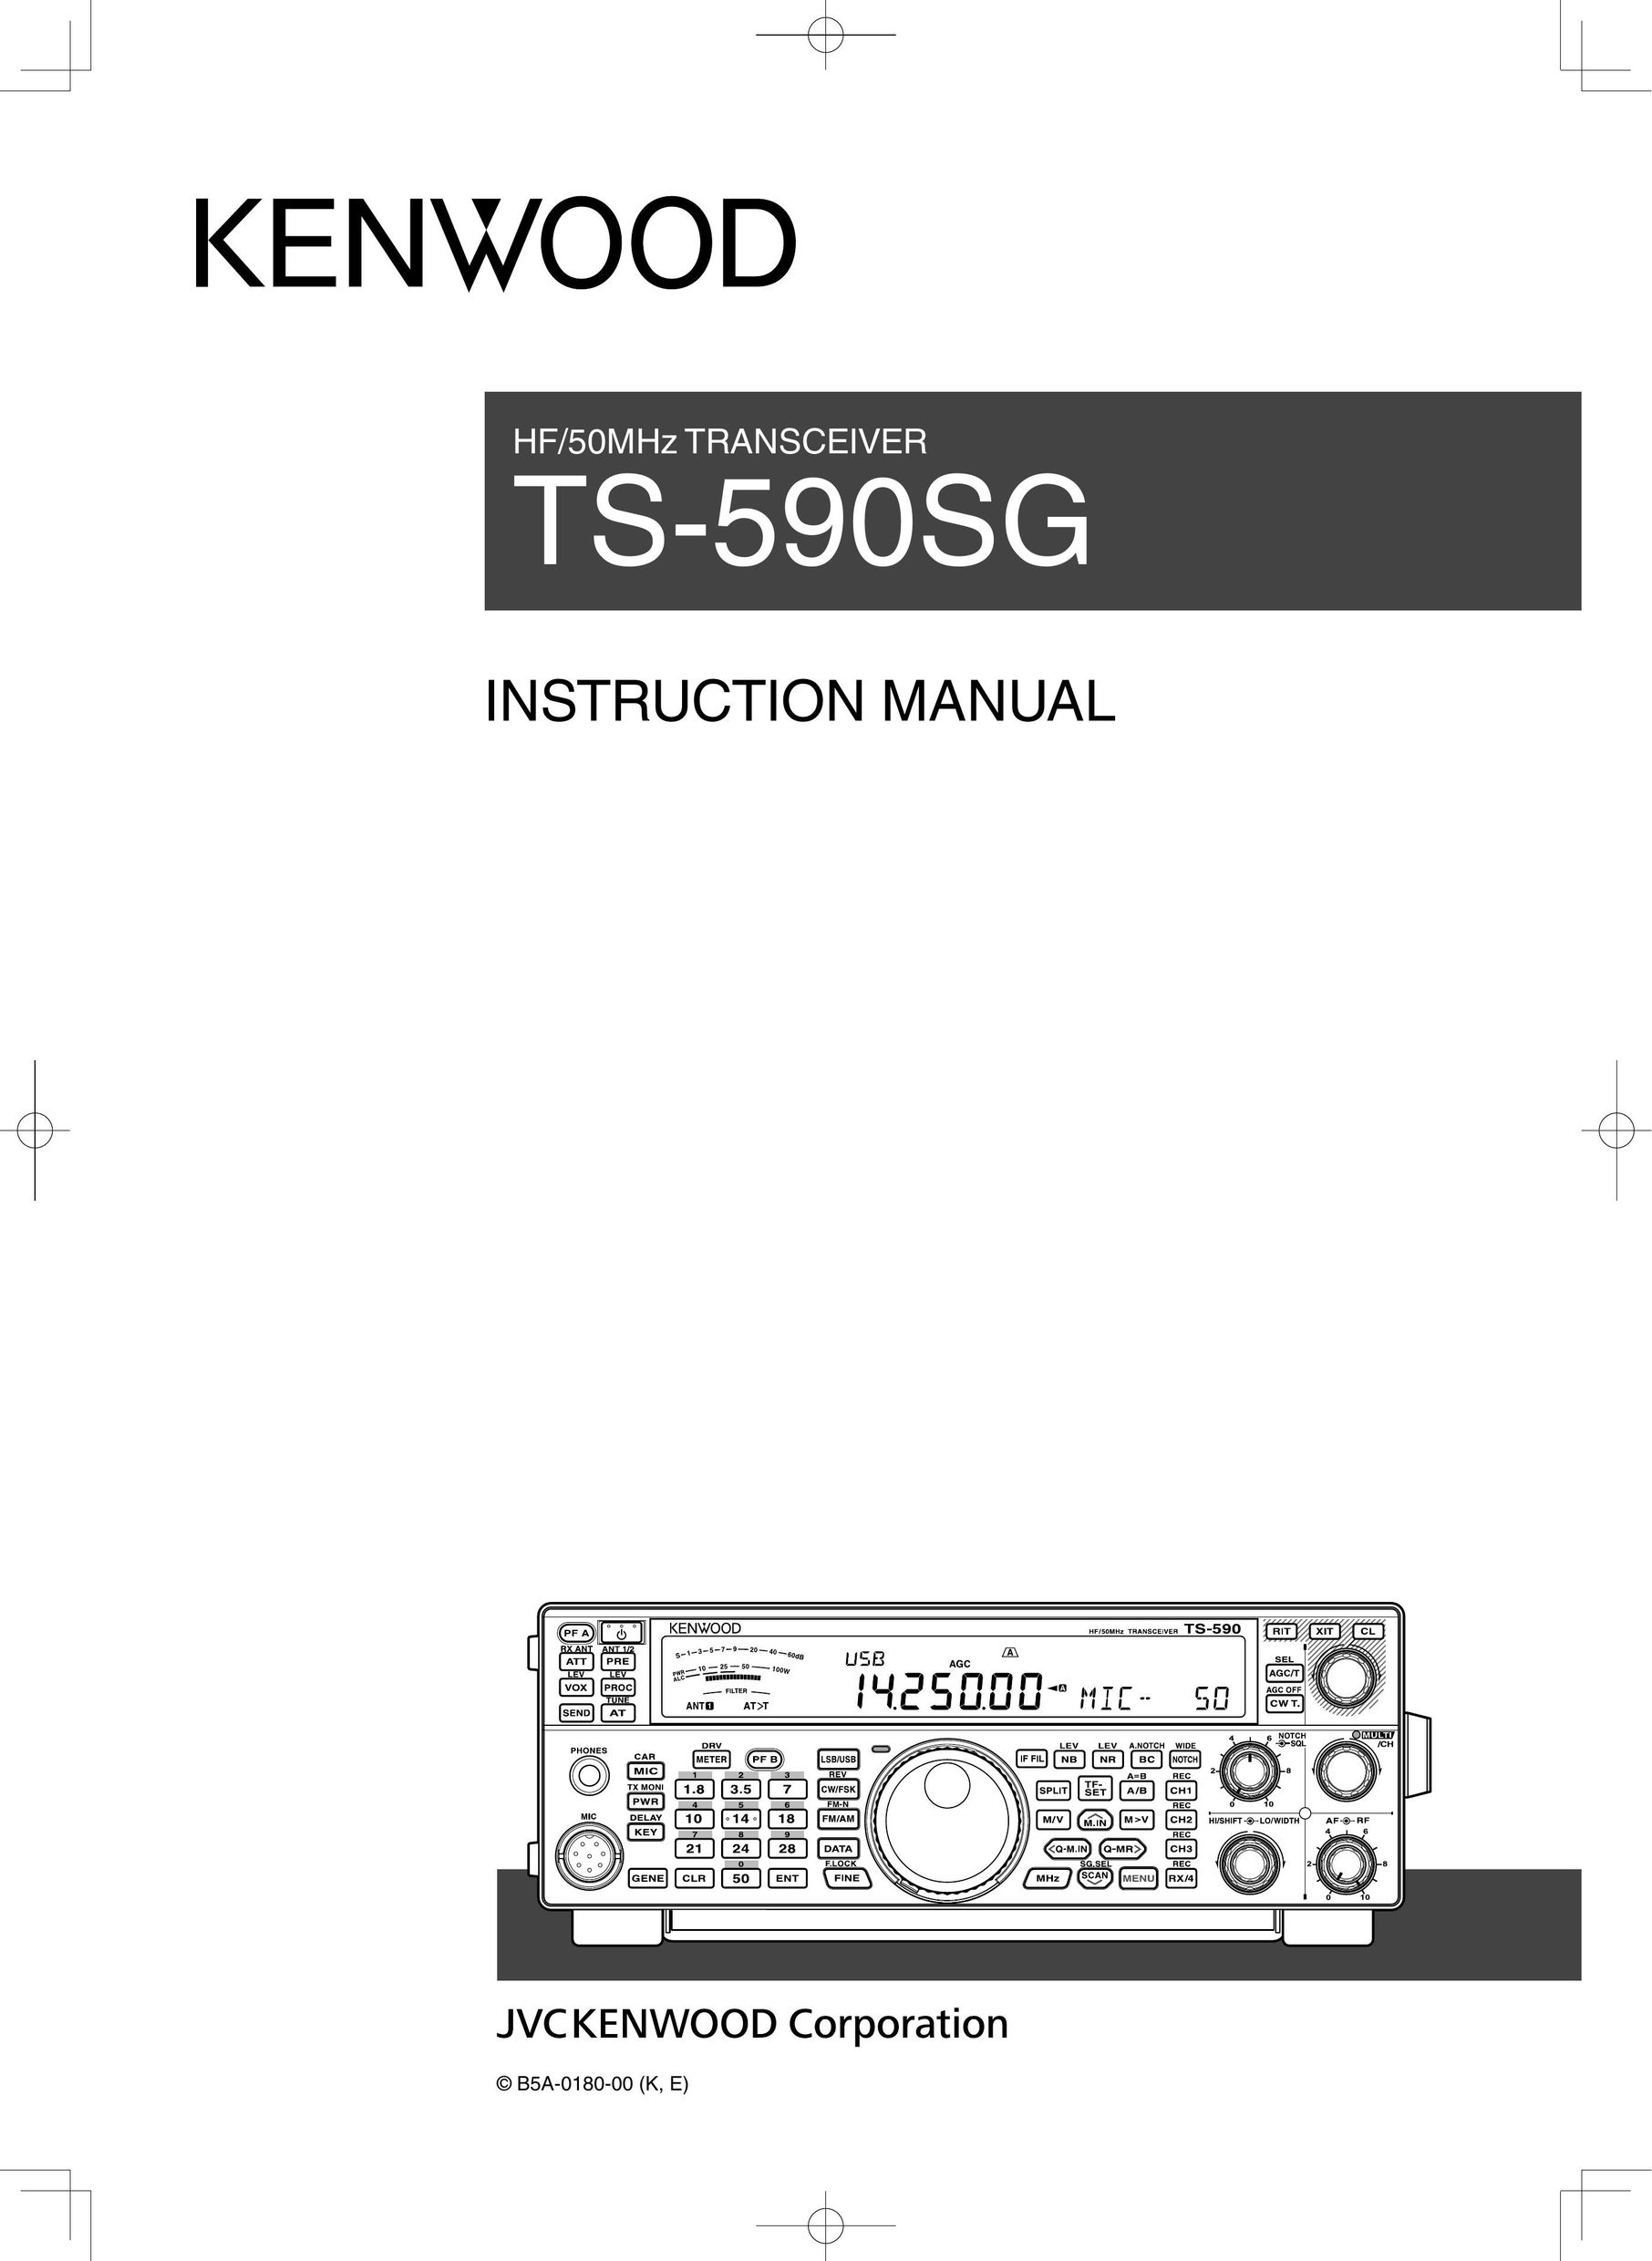 Kenwood TS590SG Car Satellite Radio System User Manual